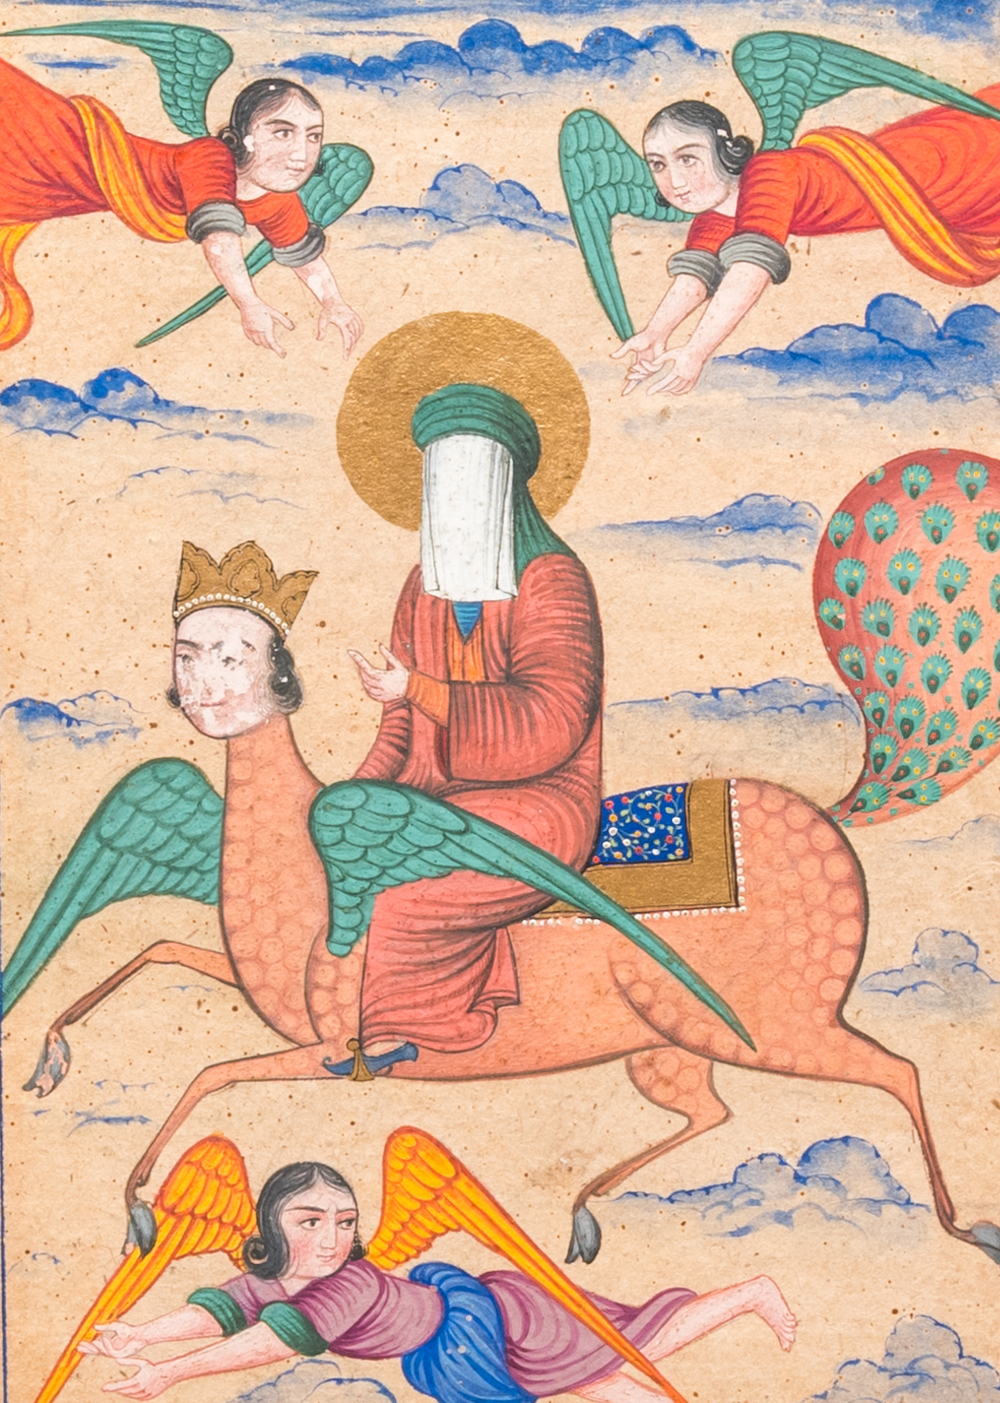 Perzische school, miniatuur: 'De Profeet Mohammed op zijn paard Buraq'